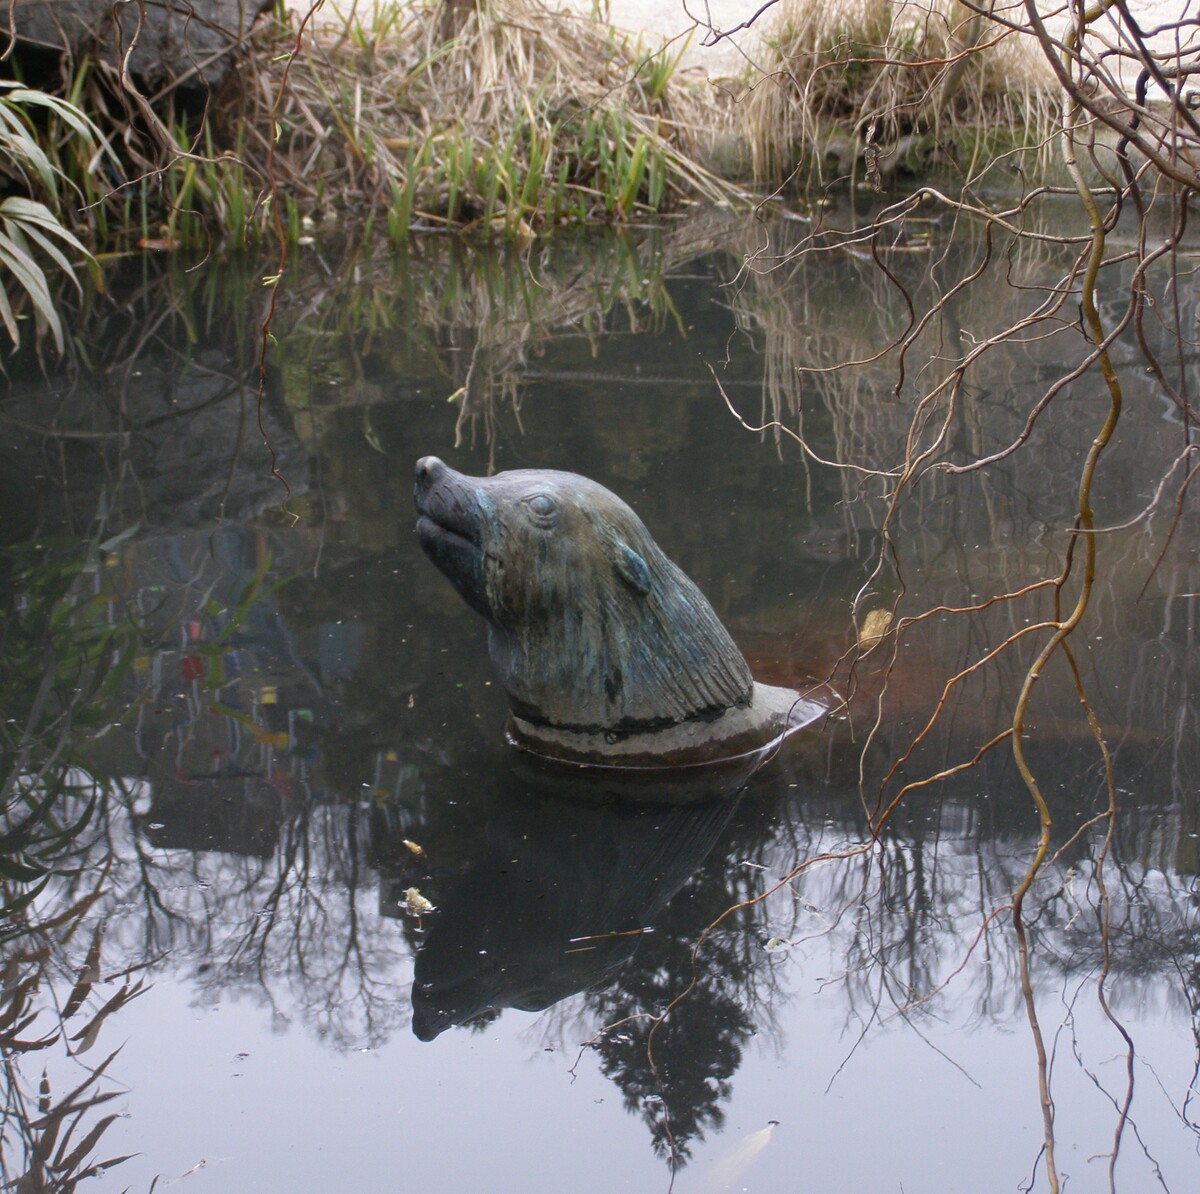 Pomník lachtana Gastona v zoo Praha, který se stal jedním ze symbolů povodní 2002. Lachtan povodně nepřežil. Pracovníci zoo museli evakuovat zvířata do bezpečí.